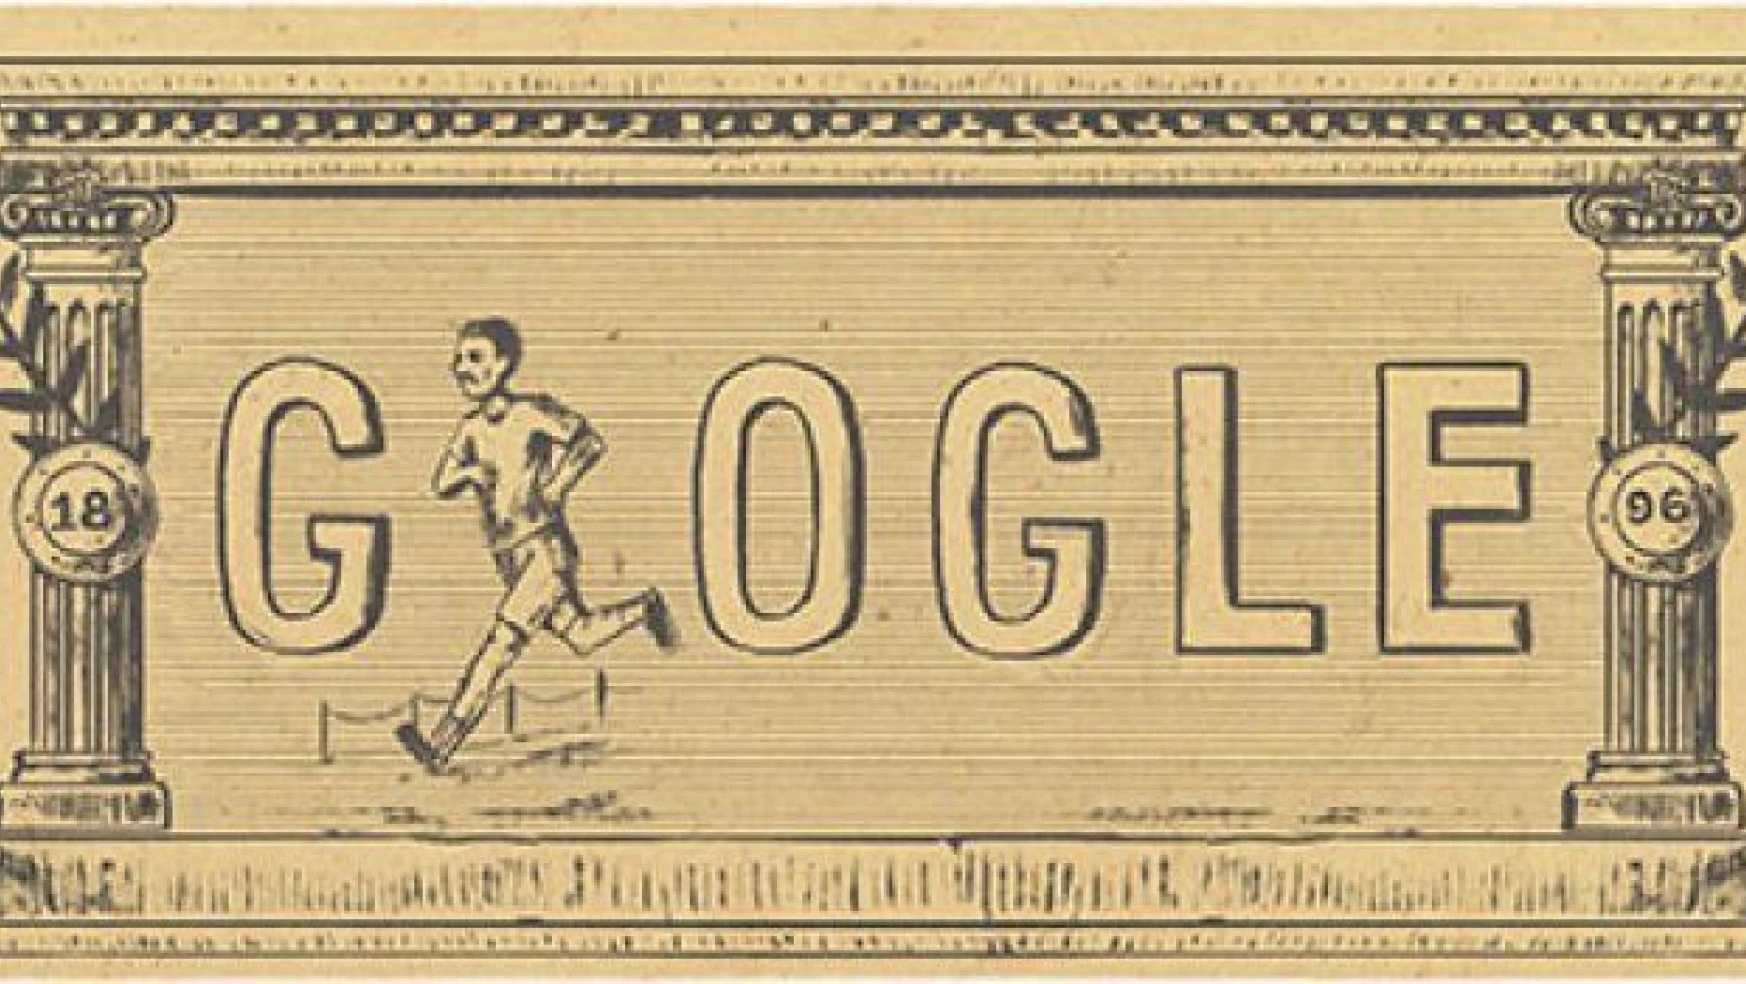 Modern olimpiyat oyunlarının 120. yıl dönümü Doodle oldu